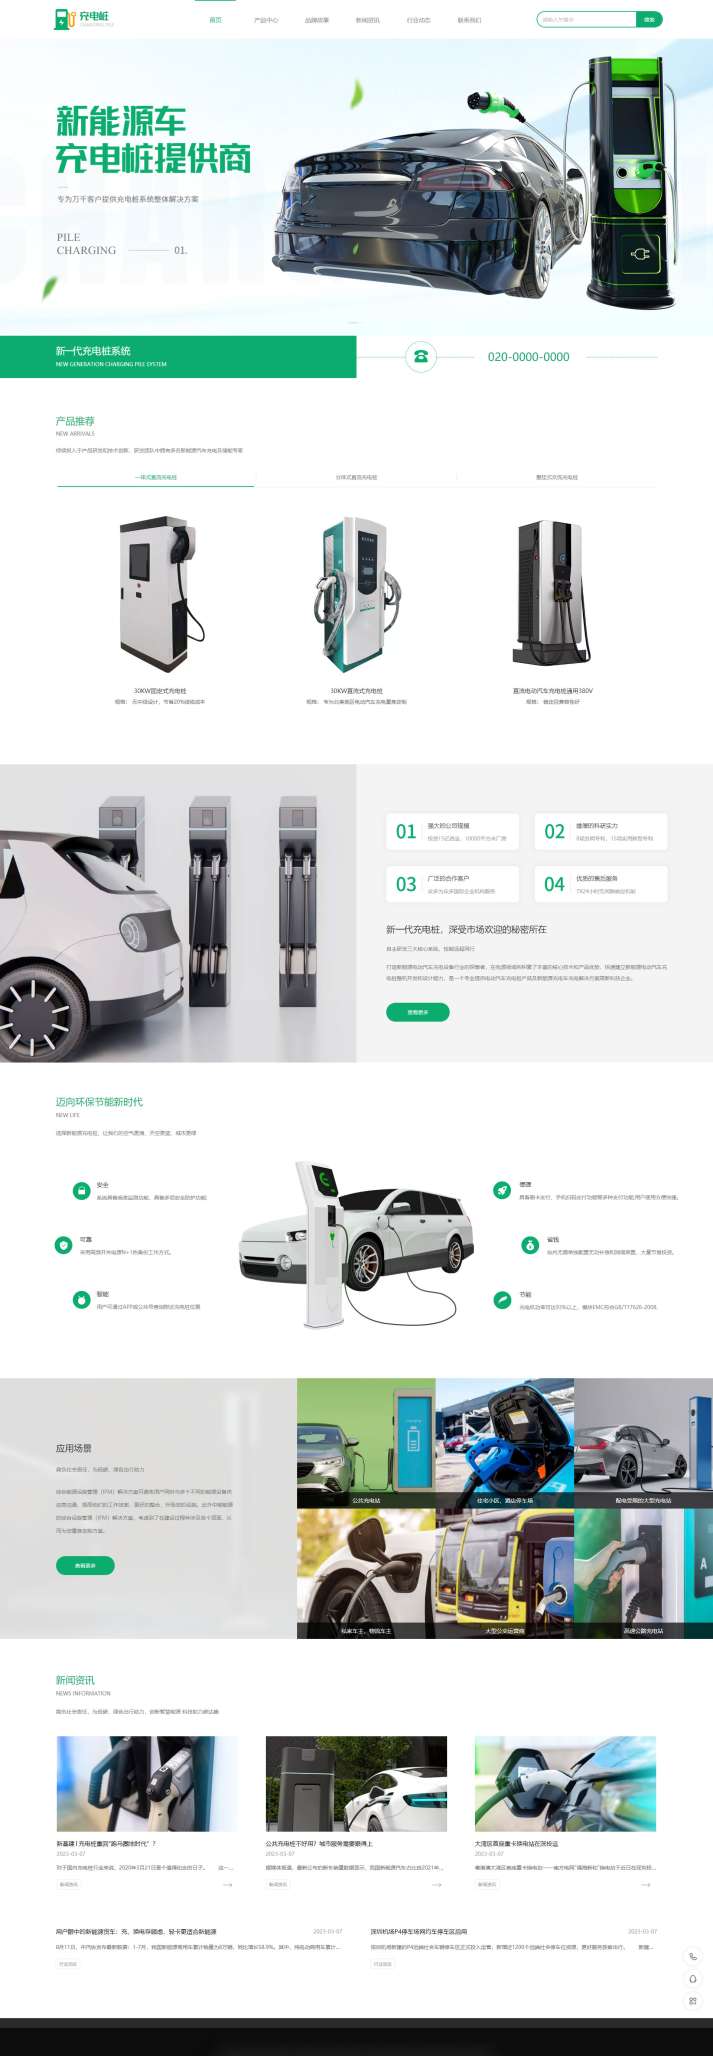 高端汽车充电桩设备企业自适应网站模板